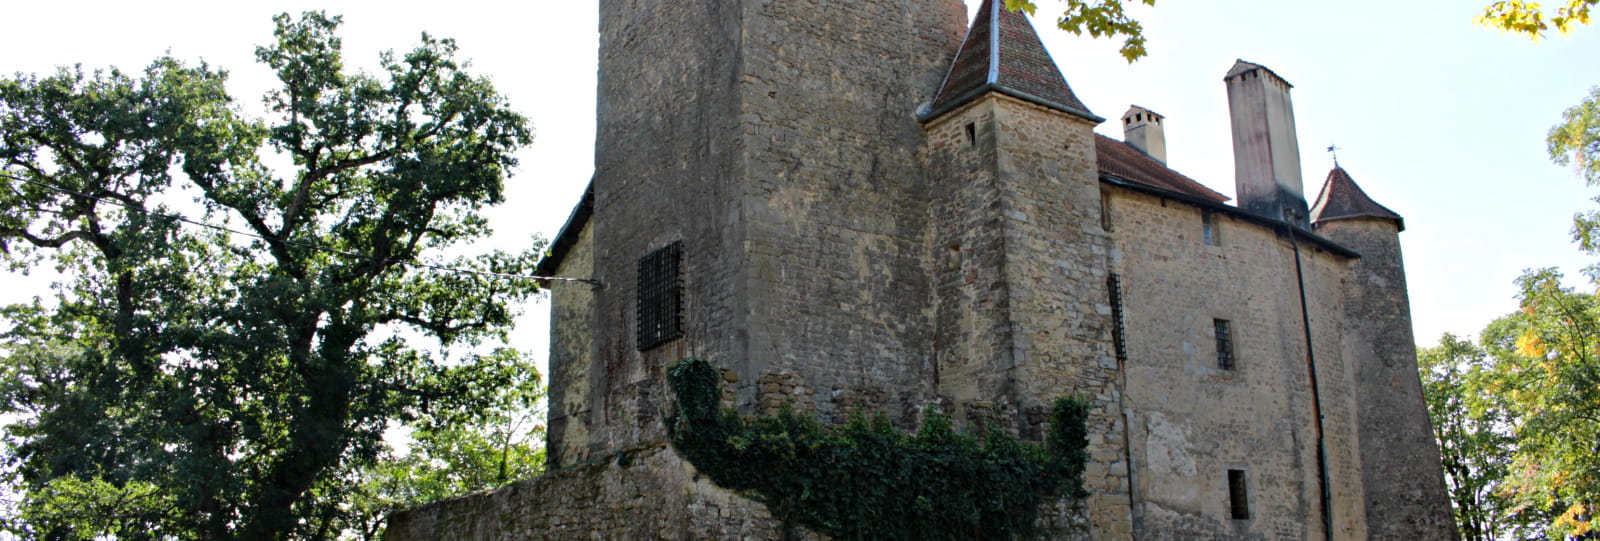 Château de Charmes sur l'Herbasse _